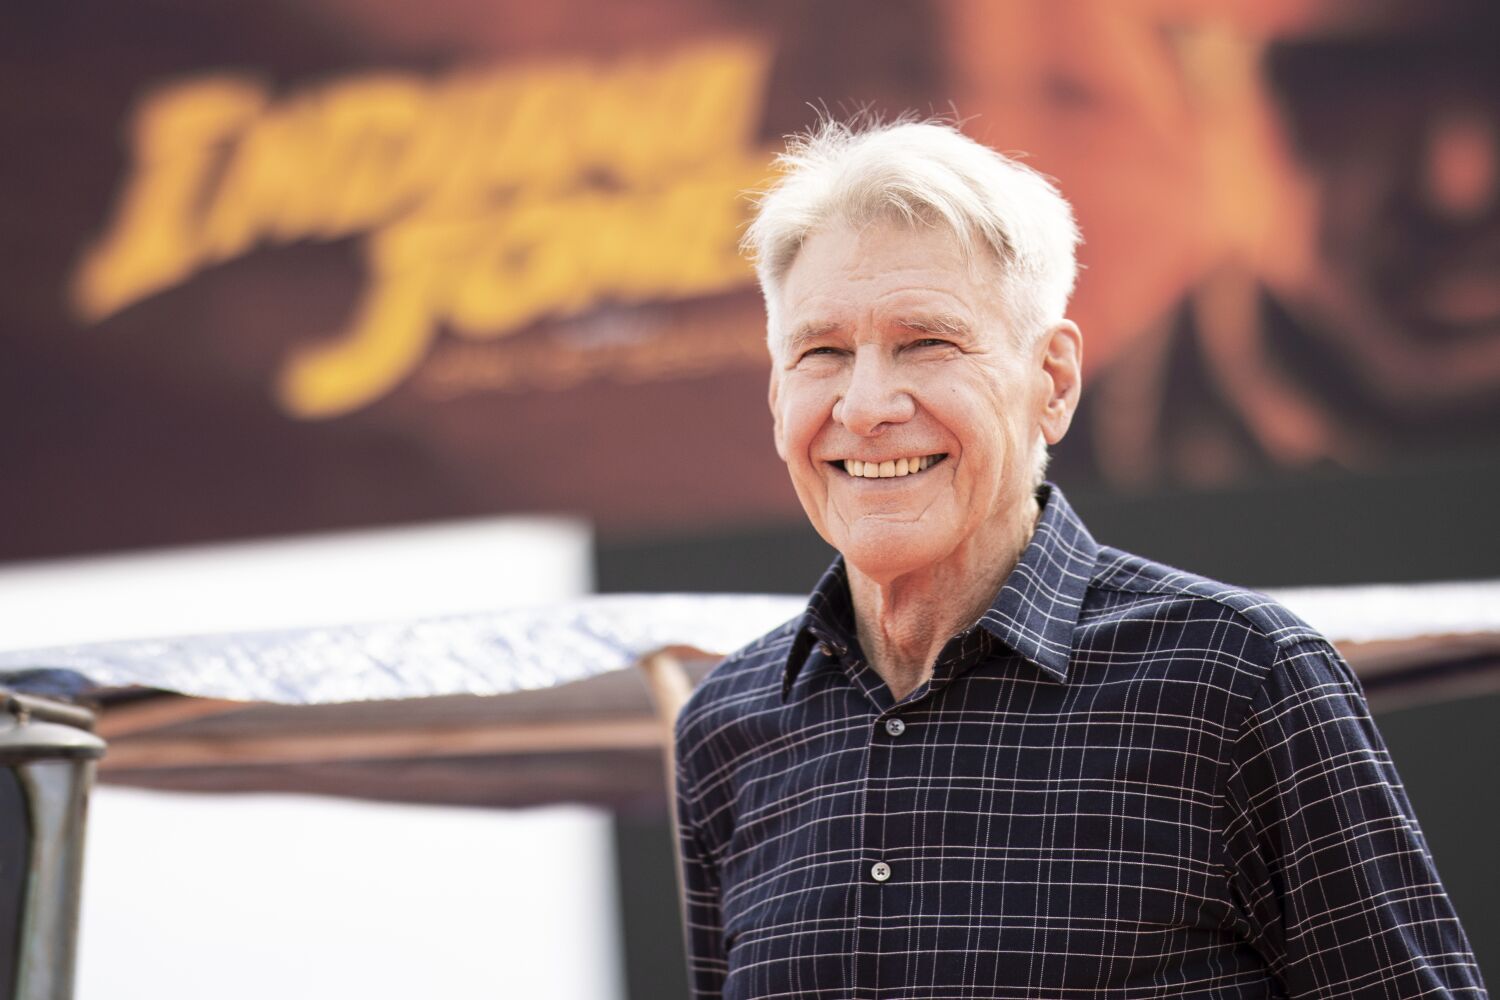 Harrison Ford elogió el envejecimiento en 'Indiana Jones'. No tiene prisa por revivir su juventud